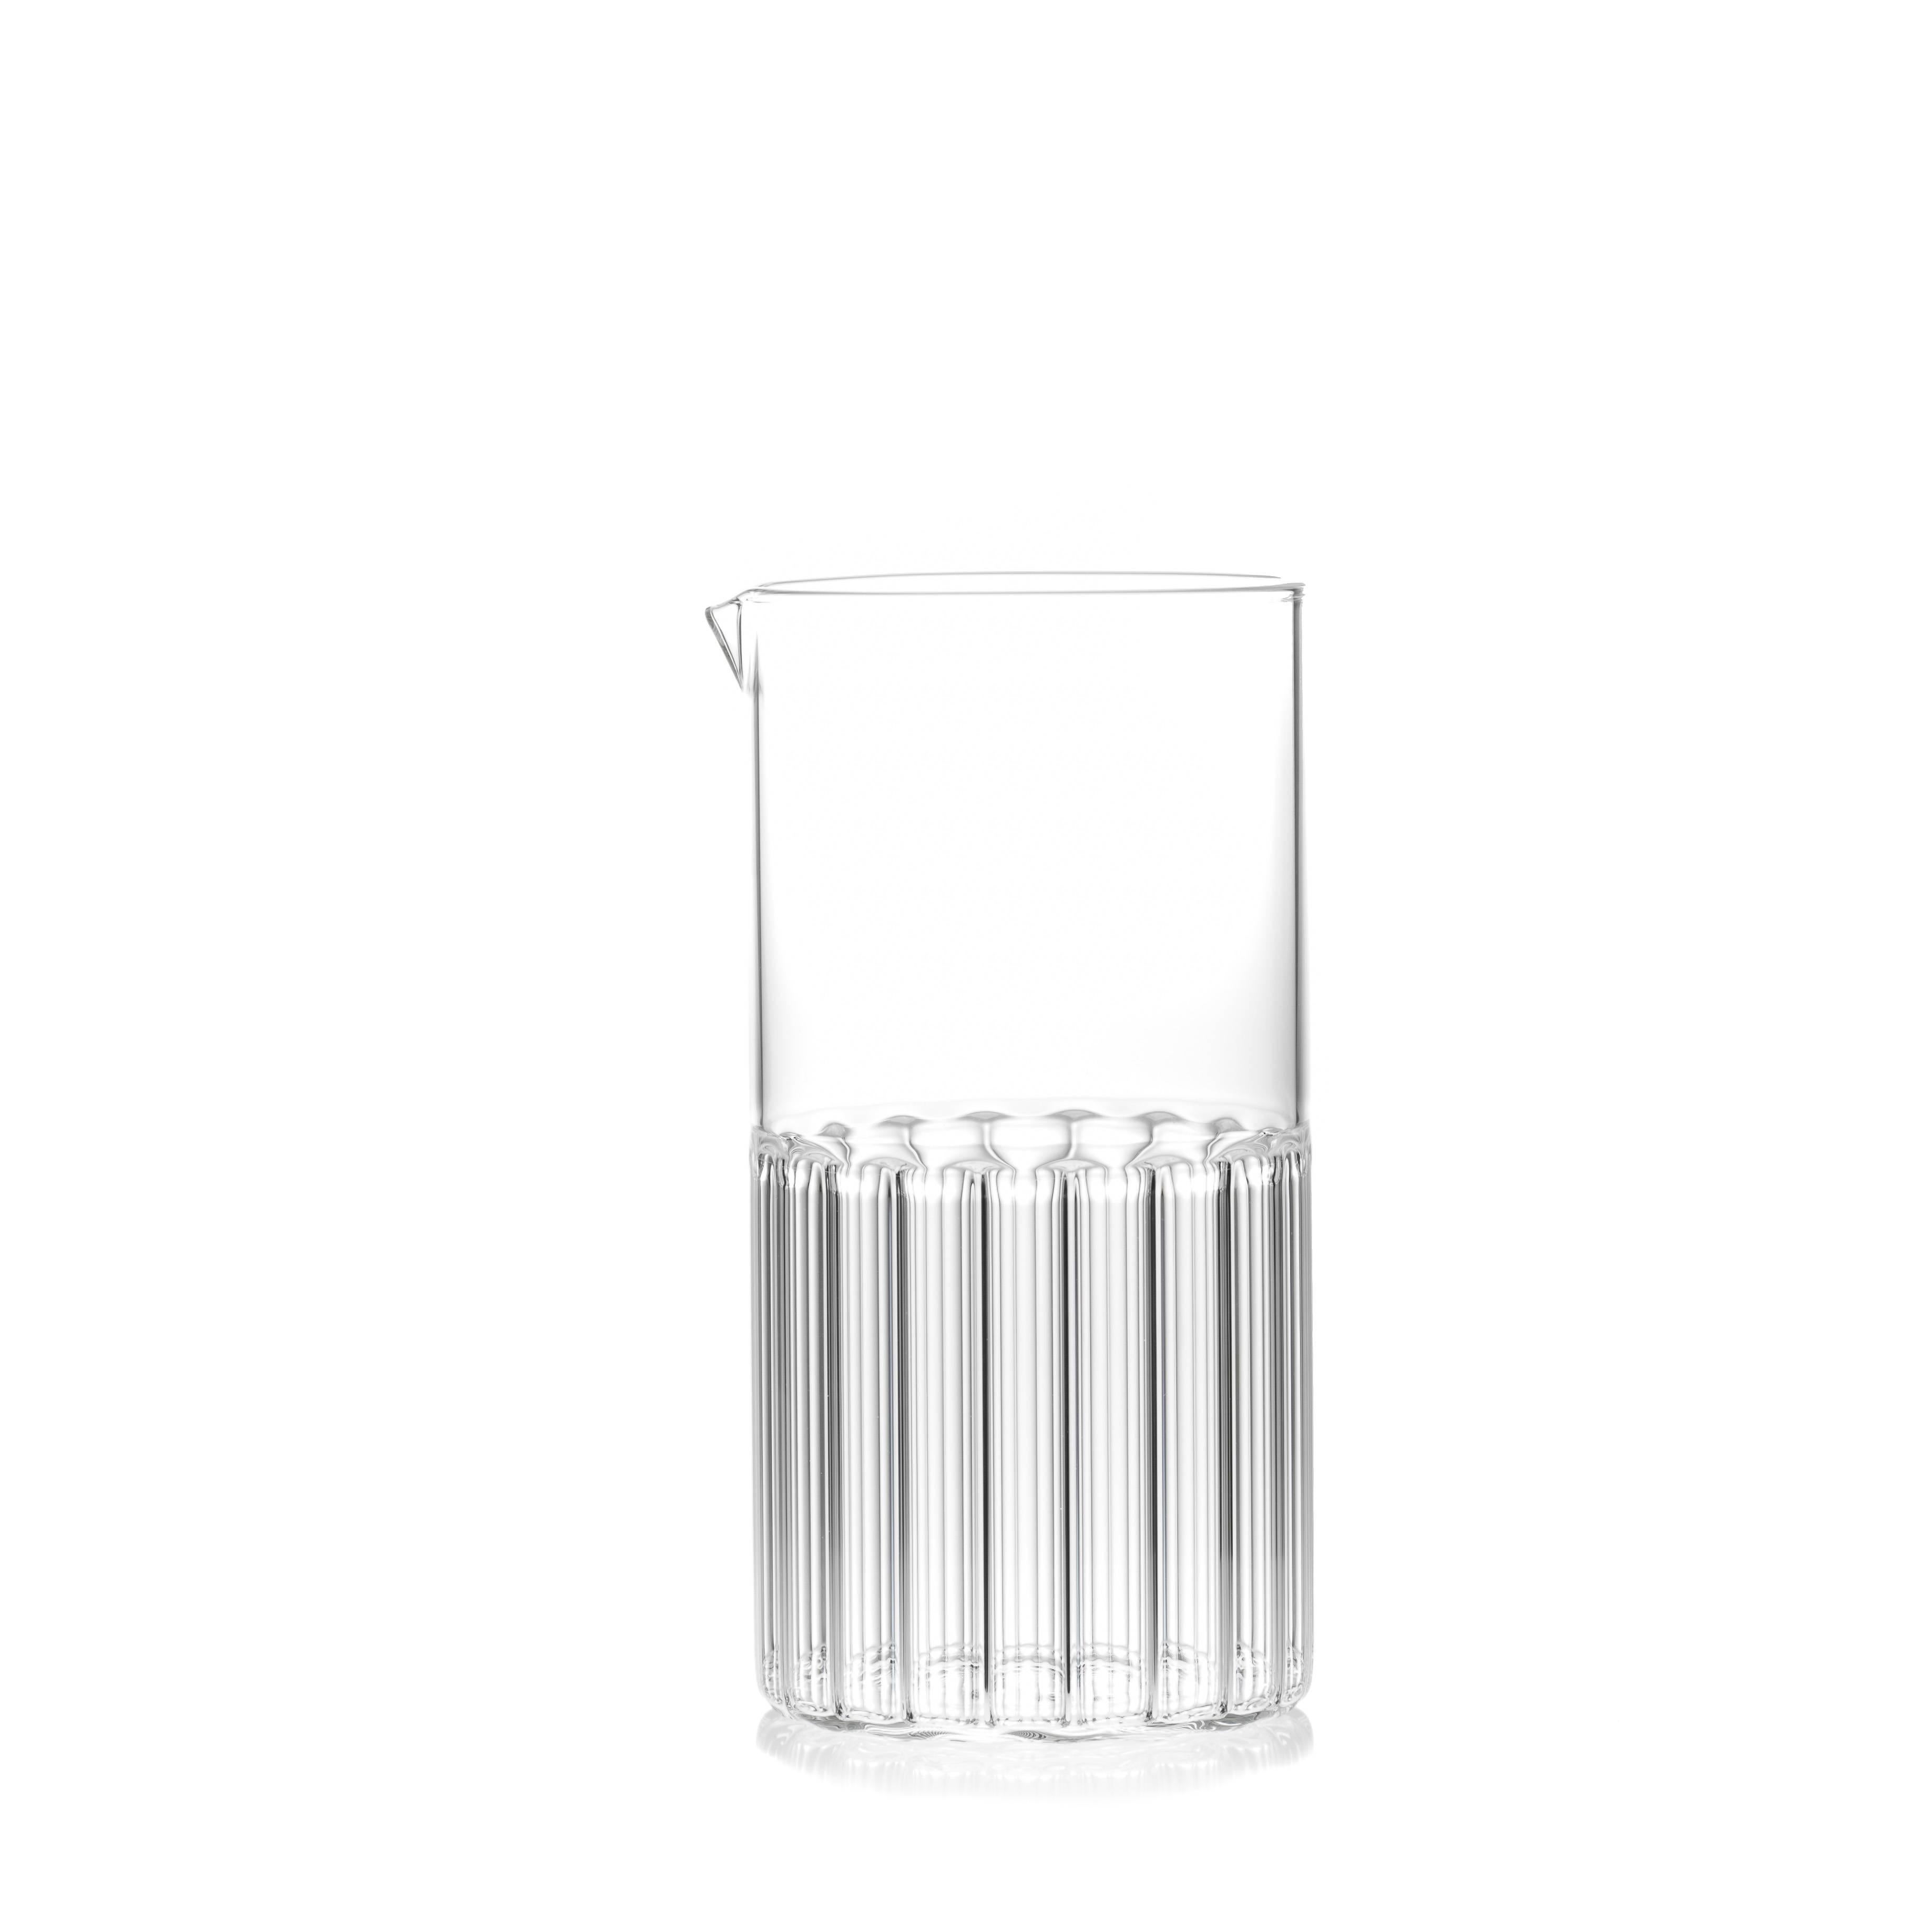 Cet ensemble de verres transparents contemporains comprend 1 carafe Bessho et 6 grands verres Rila. Chaque pièce est fabriquée à la main en République tchèque.

Tout comme la petite ville est connue pour les vertus curatives de ses sources d'eau